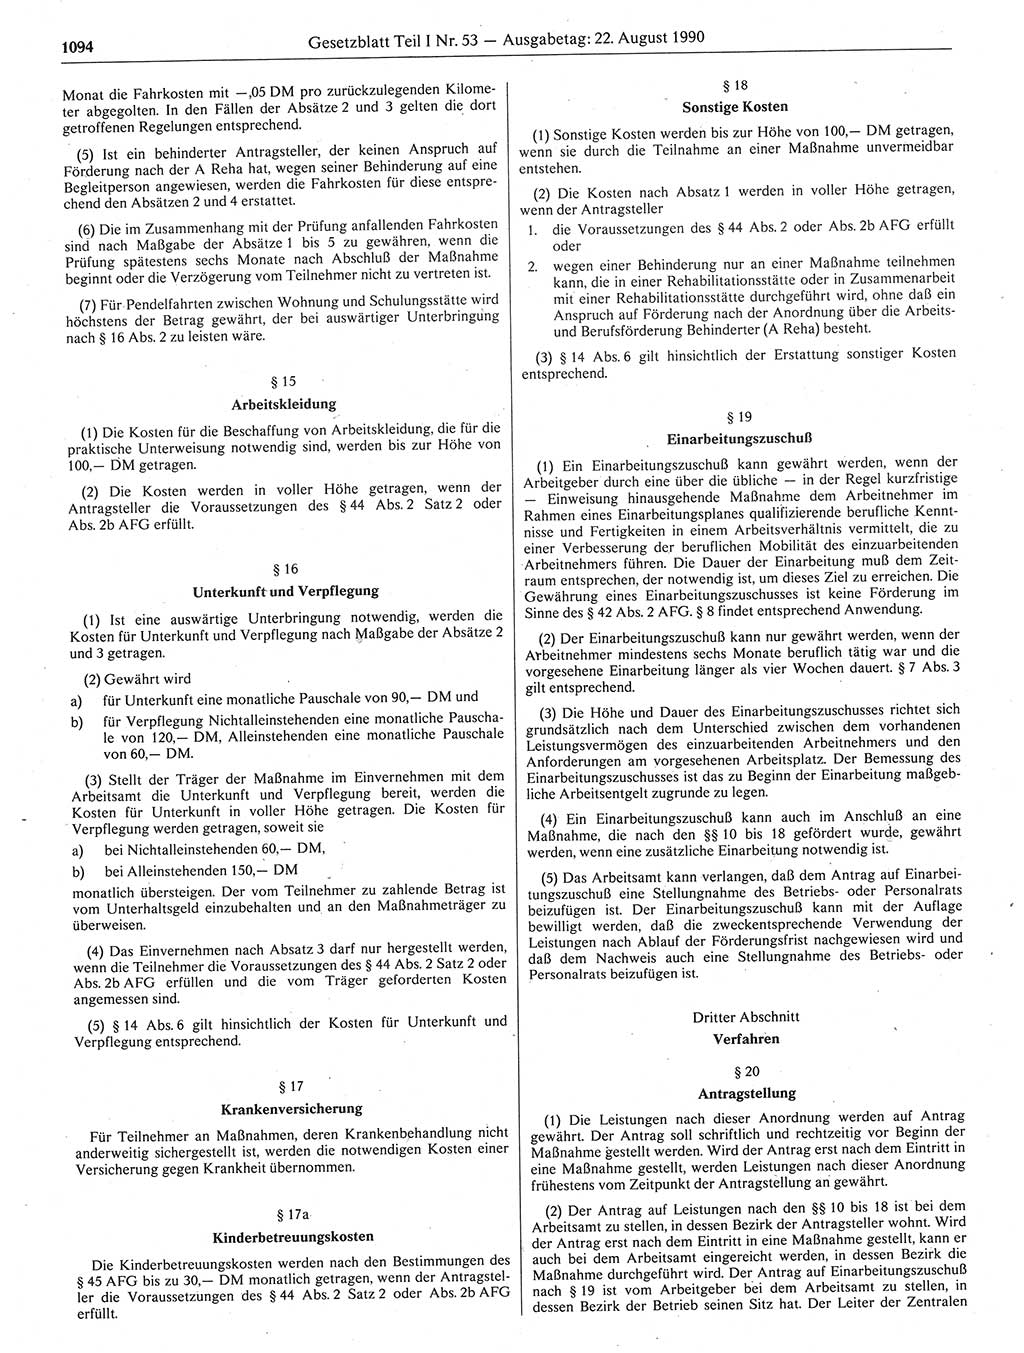 Gesetzblatt (GBl.) der Deutschen Demokratischen Republik (DDR) Teil Ⅰ 1990, Seite 1094 (GBl. DDR Ⅰ 1990, S. 1094)